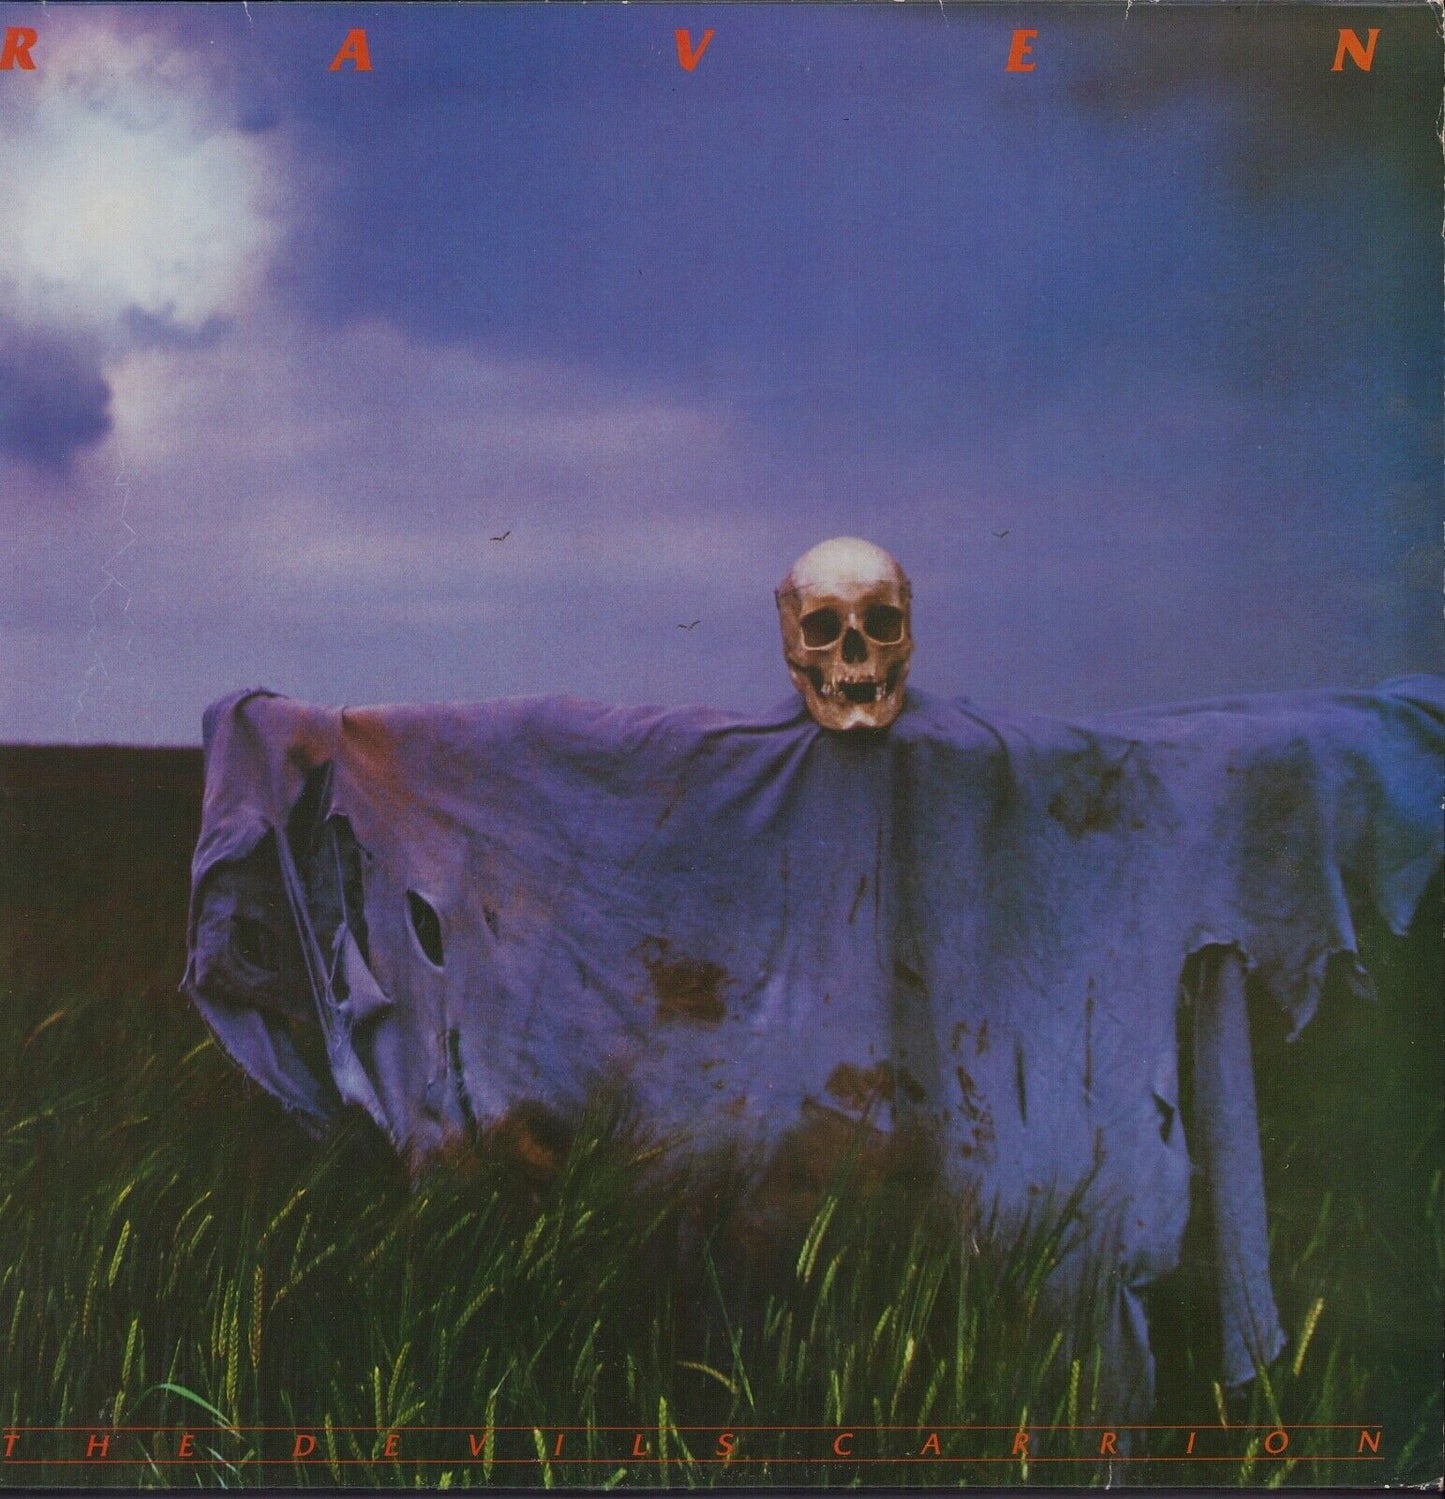 Raven - The Devil's Carrion Vinyl 2LP